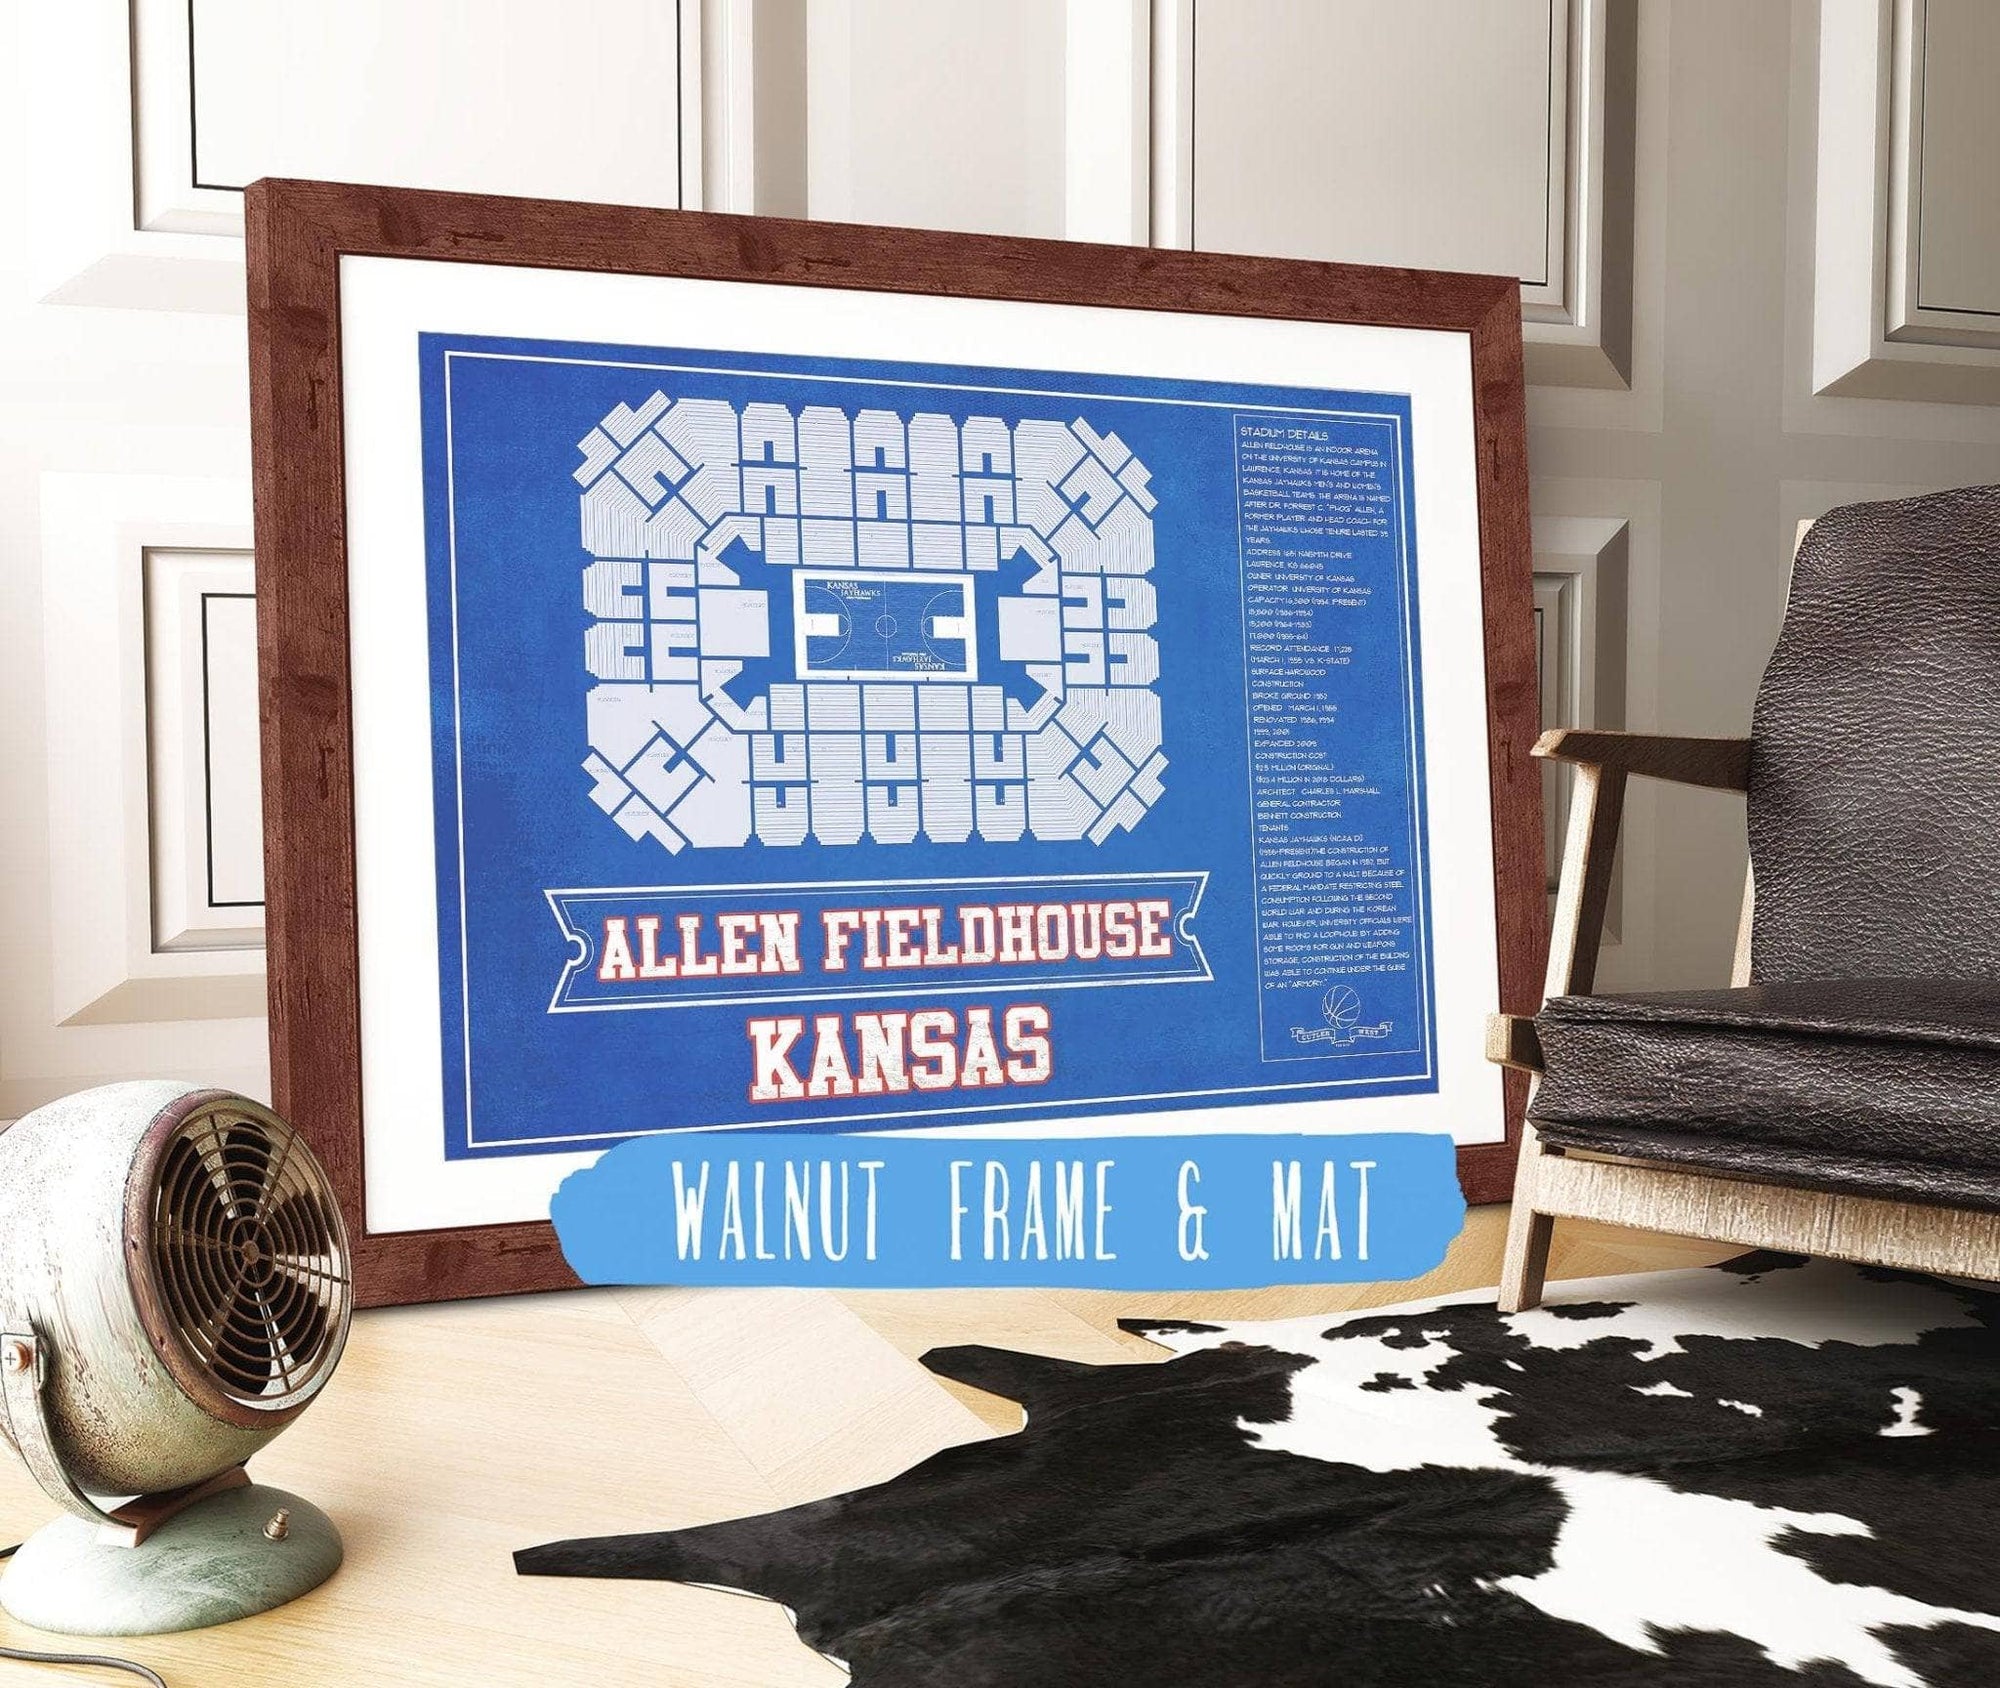 Cutler West Basketball Collection 14" x 11" / Walnut Frame & Mat Kansas Jayhawks - Allen Fieldhouse Seating Chart - College Basketball Blueprint Team Color Art 662070564-TEAM_82044